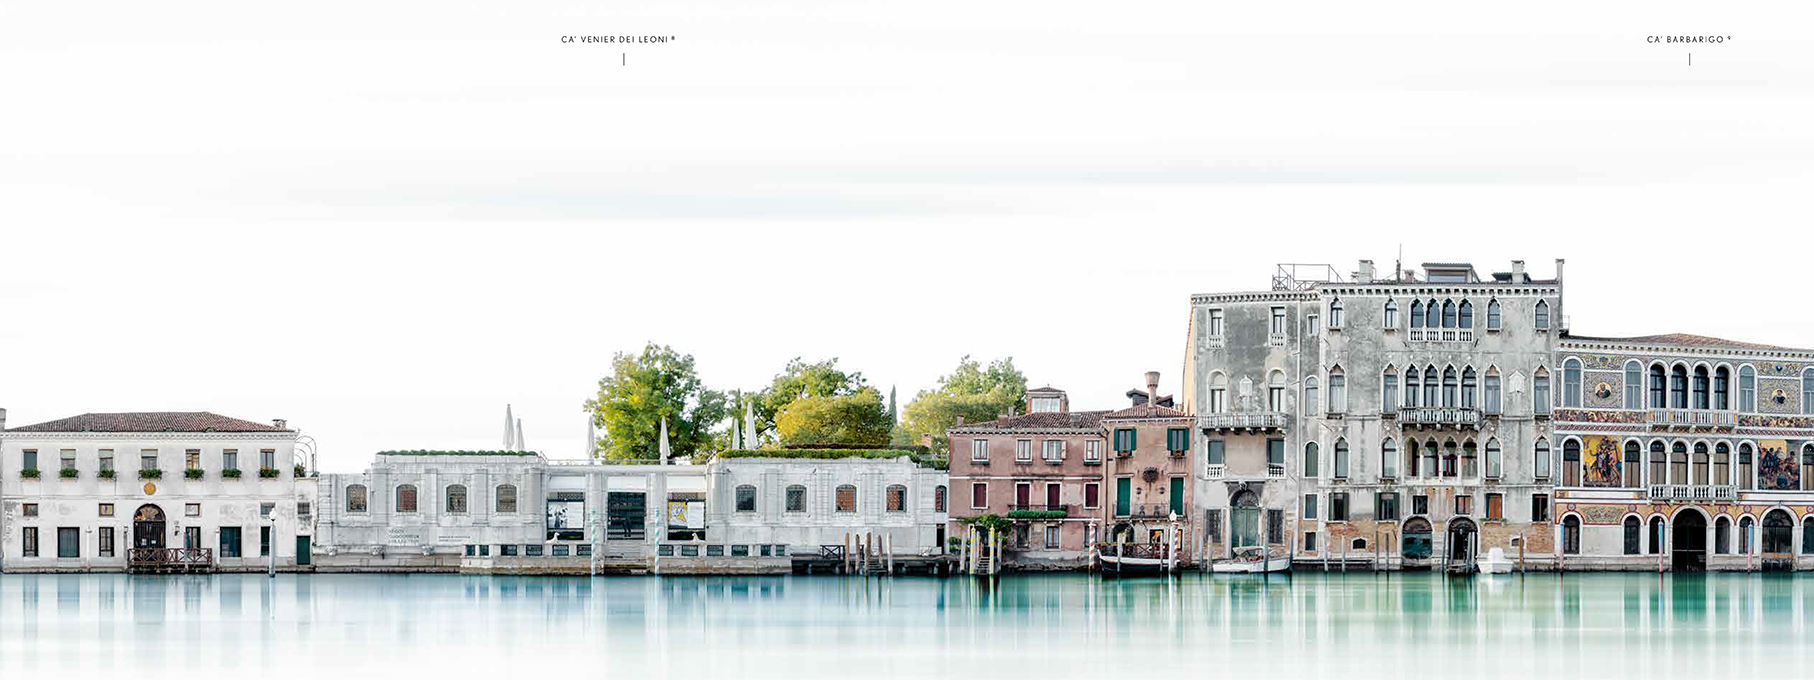 《威尼斯长卷》推广PDF-4 拷贝.jpg